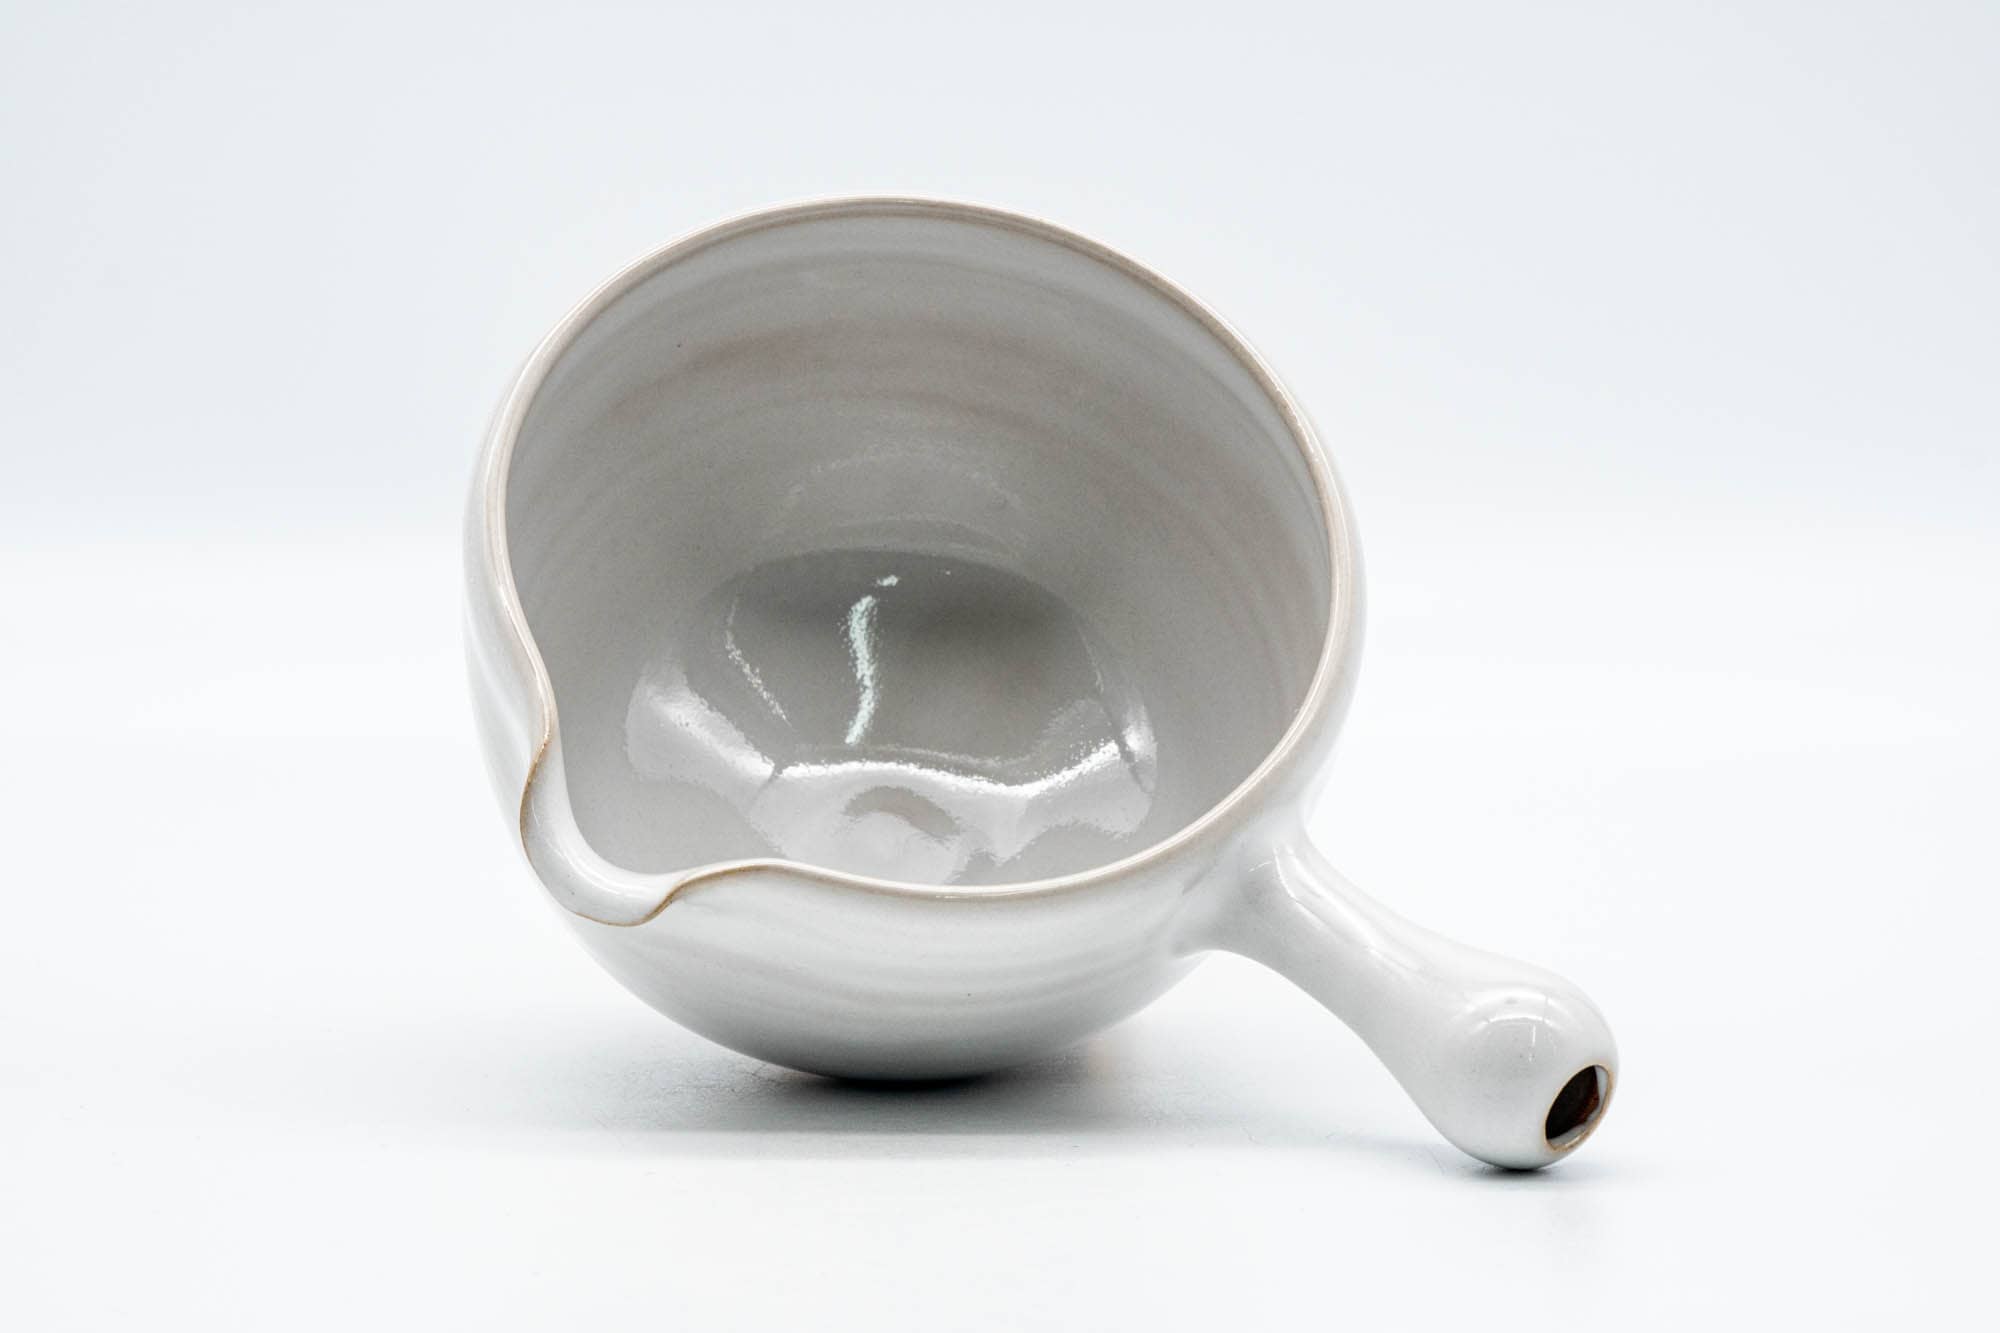 Japanese Yuzamashi - White Glazed Tokoname-yaki Spouted Bowl - 300ml